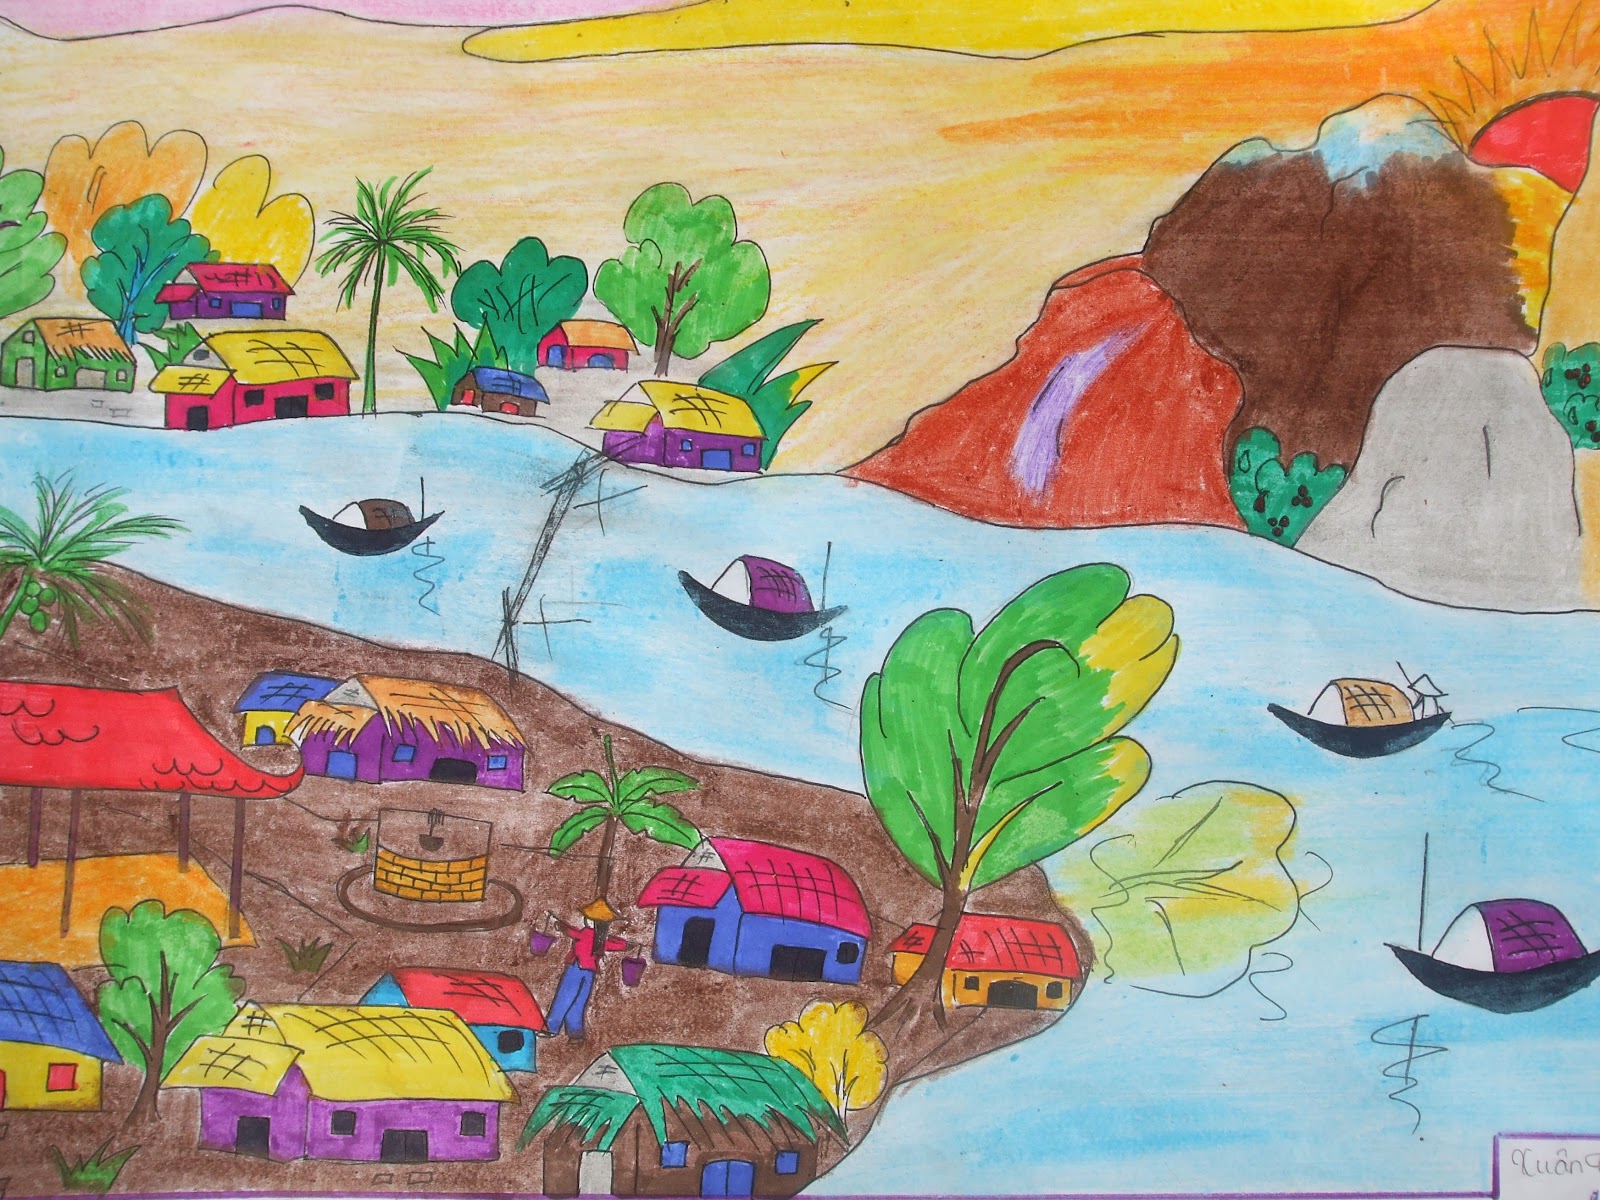 Dạy bé vẽ tranh phong cảnh làng quê cực kì đơn giản - hình ảnh 16